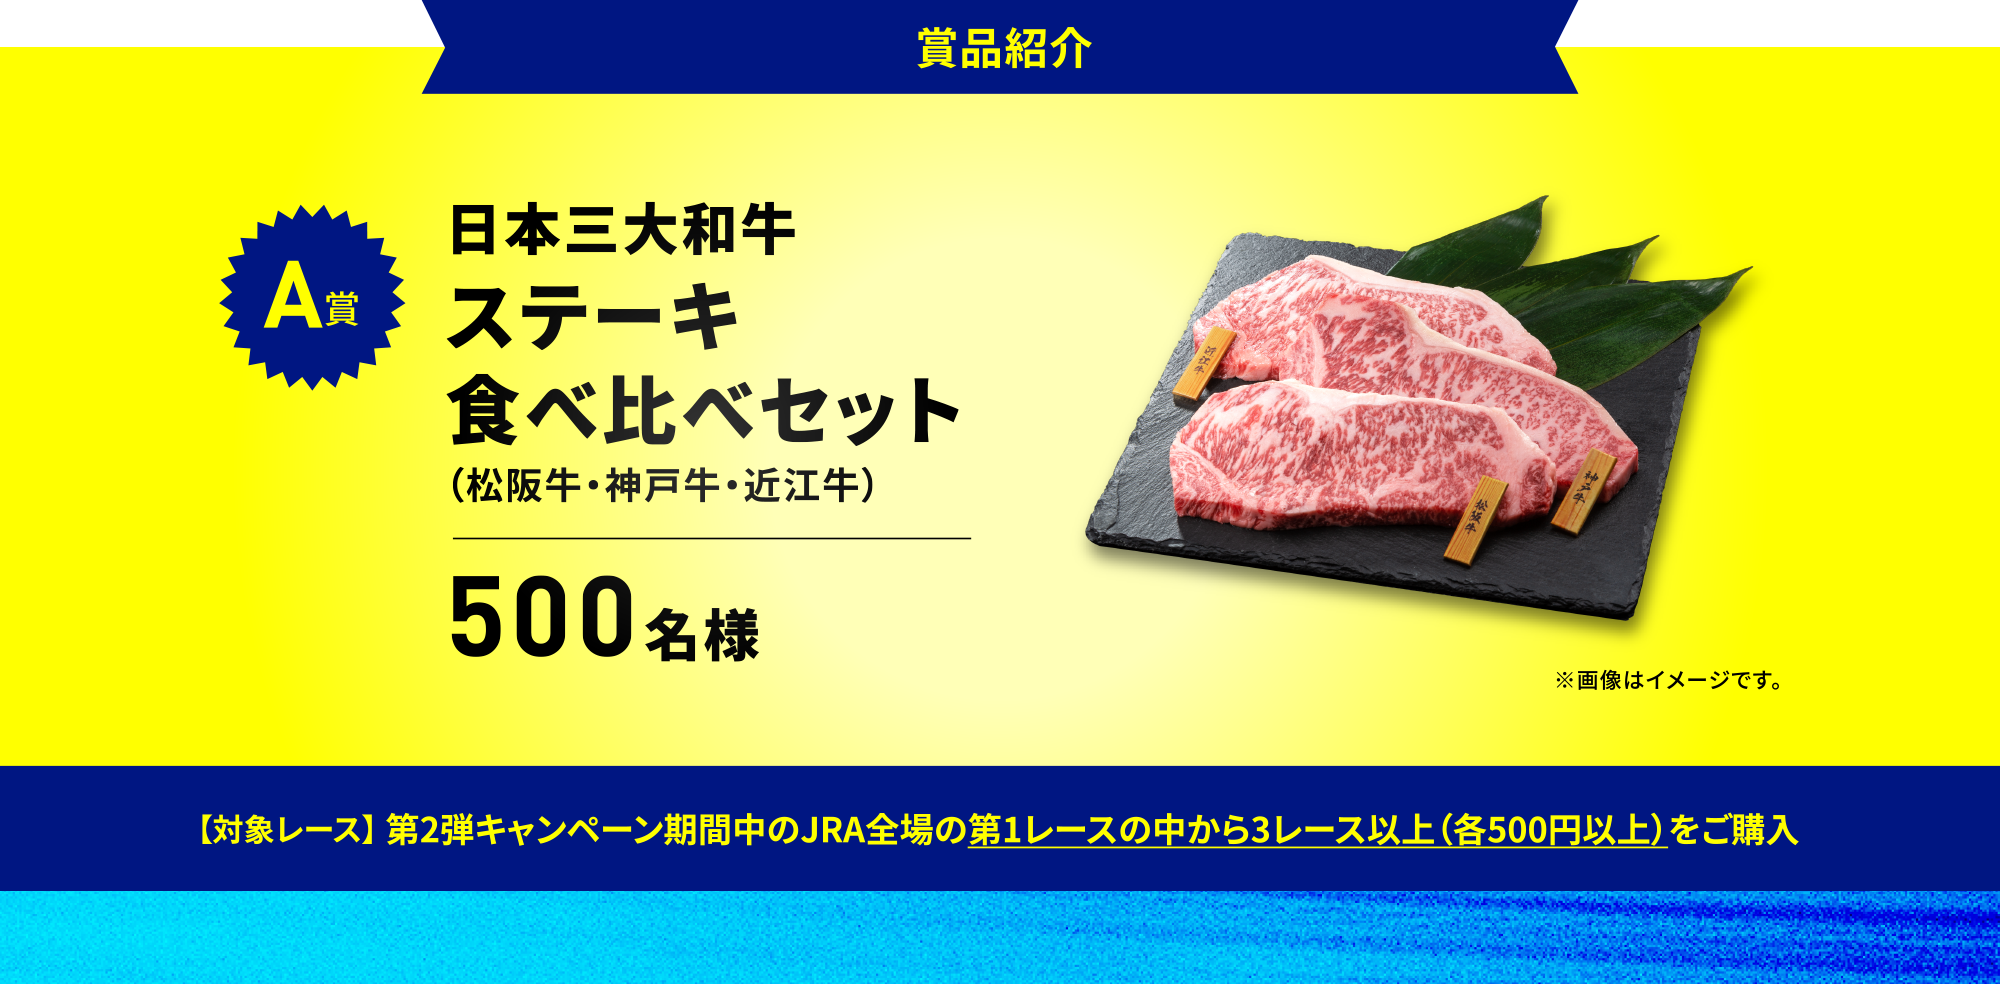 商品紹介　
A賞 日本三大和牛ステーキ食べ比べセット（松阪牛・神戸牛・近江牛）500名様